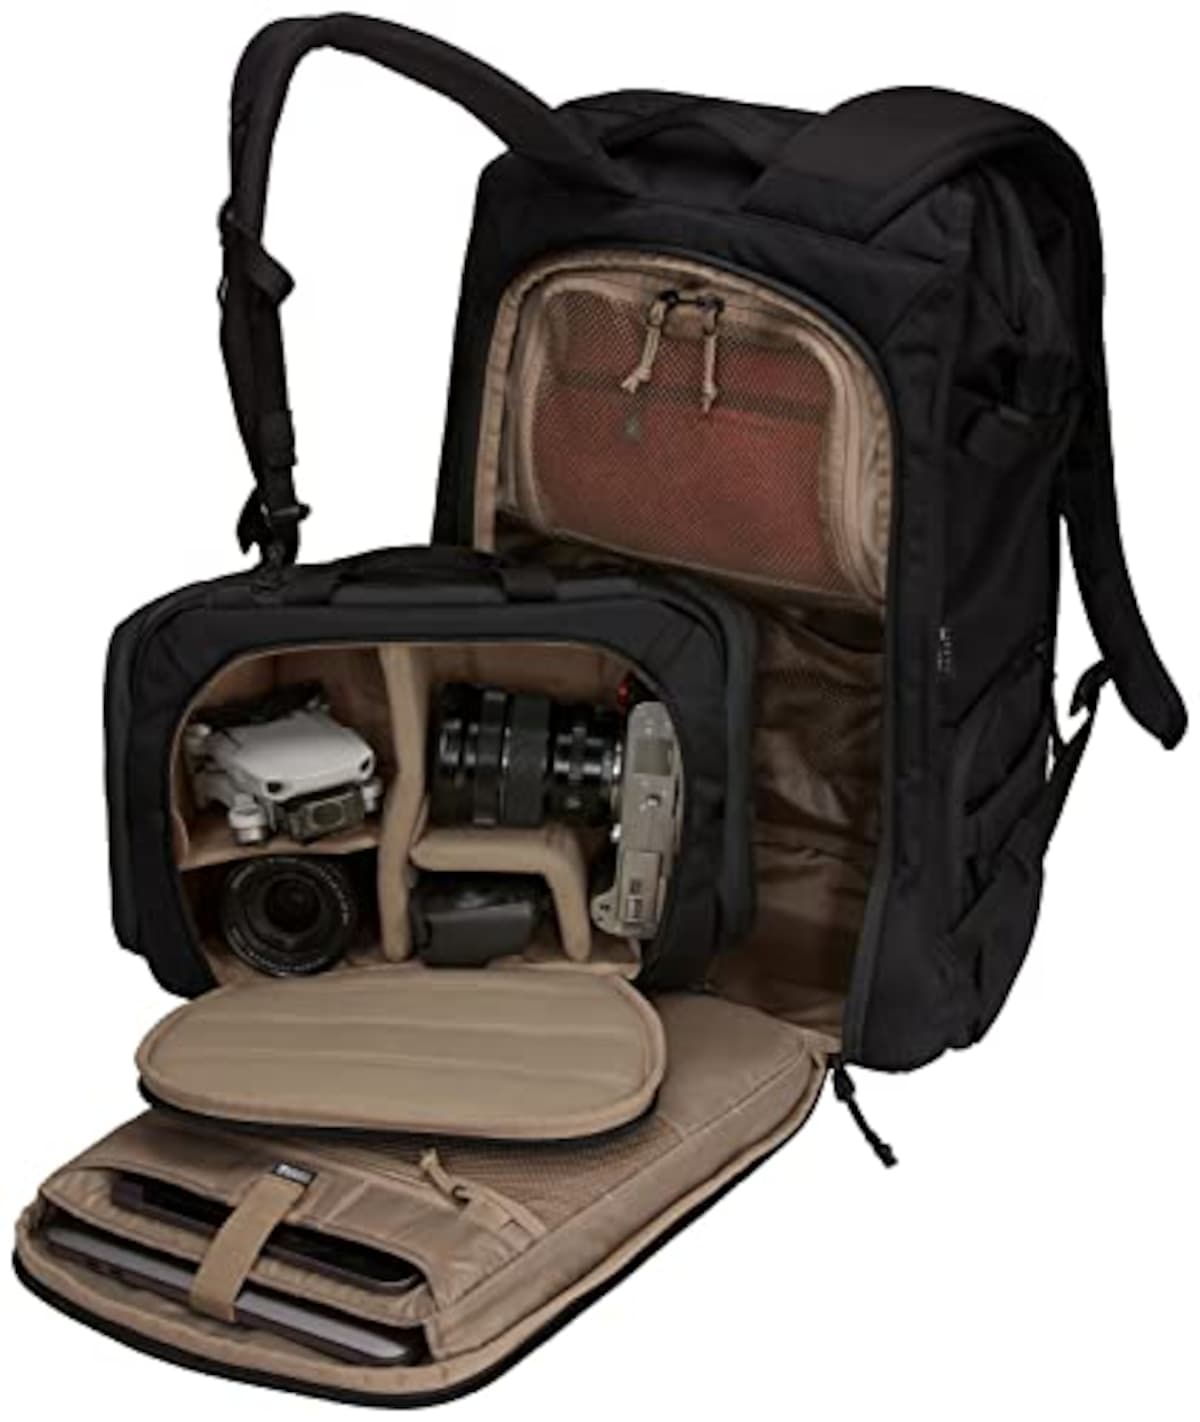  [スーリー] カメラ用バッグパック Covert Camera Backpack Black 容量:24L 3203906画像6 